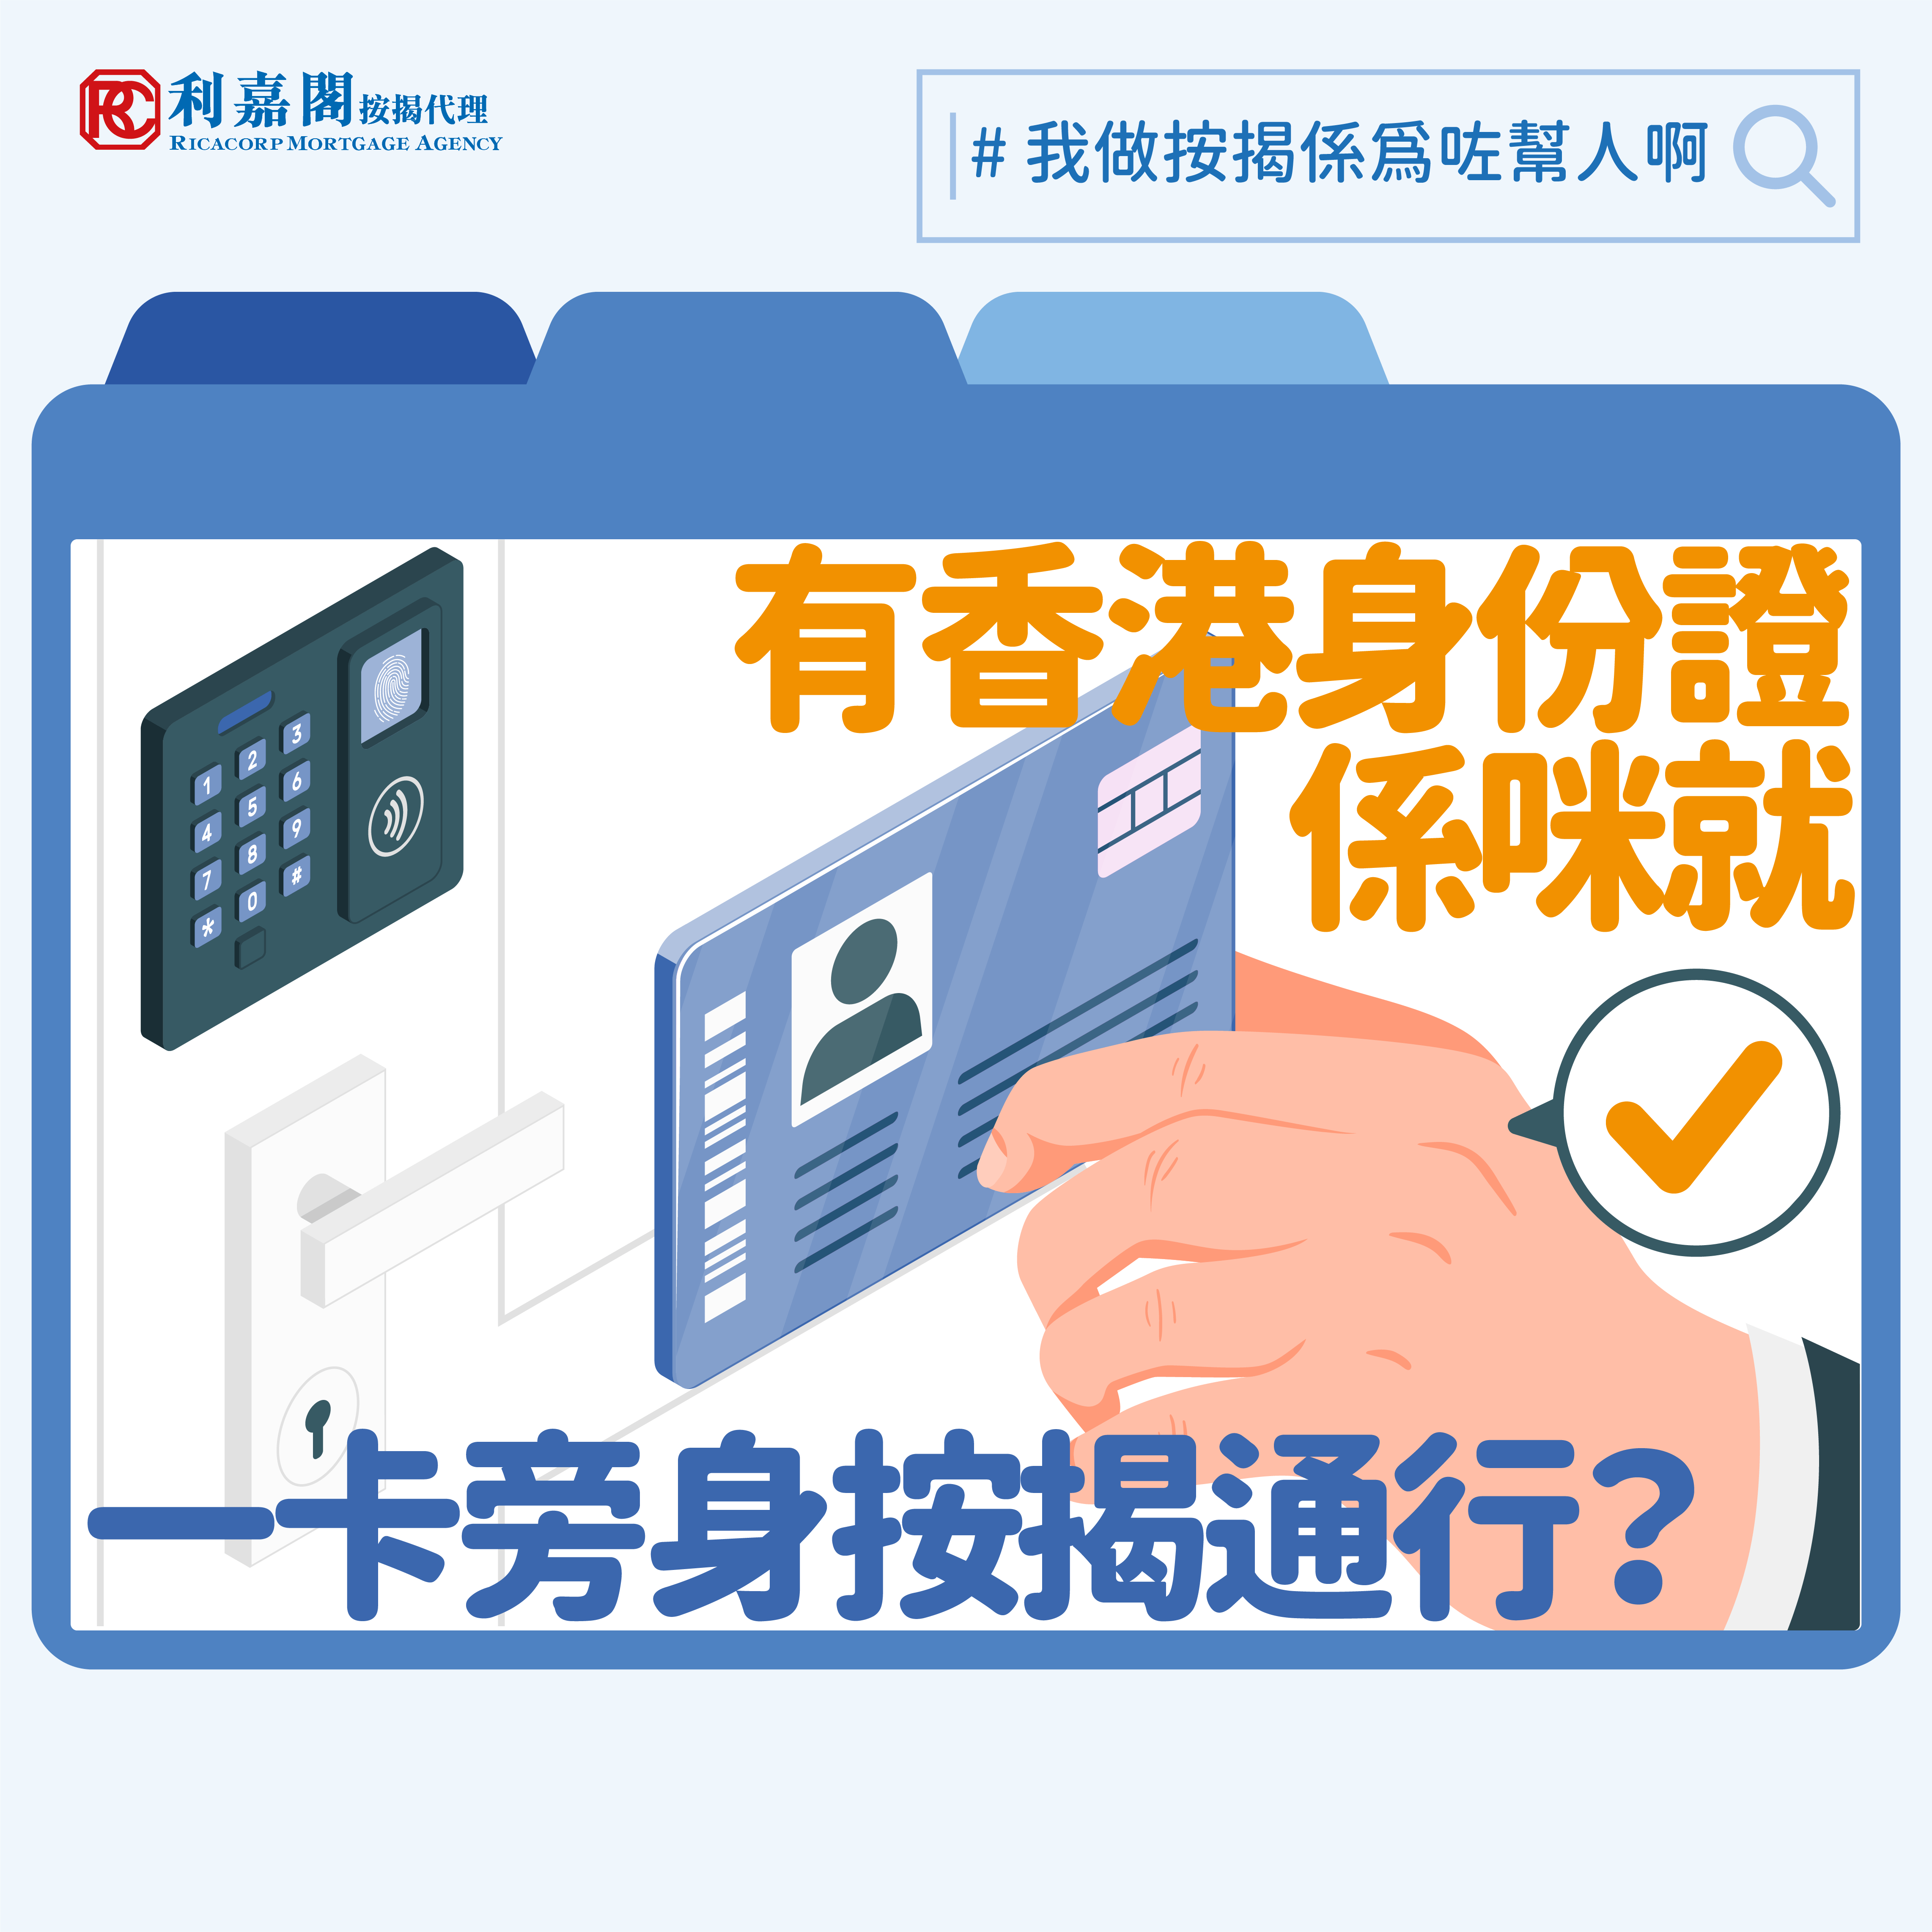 在申請按揭時提交香港身份證作為證明文件看似是一件普通不過的事，但原來身份證上暗藏玄機，稍有不慎便有機會影響按揭申請呢！Whatsapp: 5662 2730